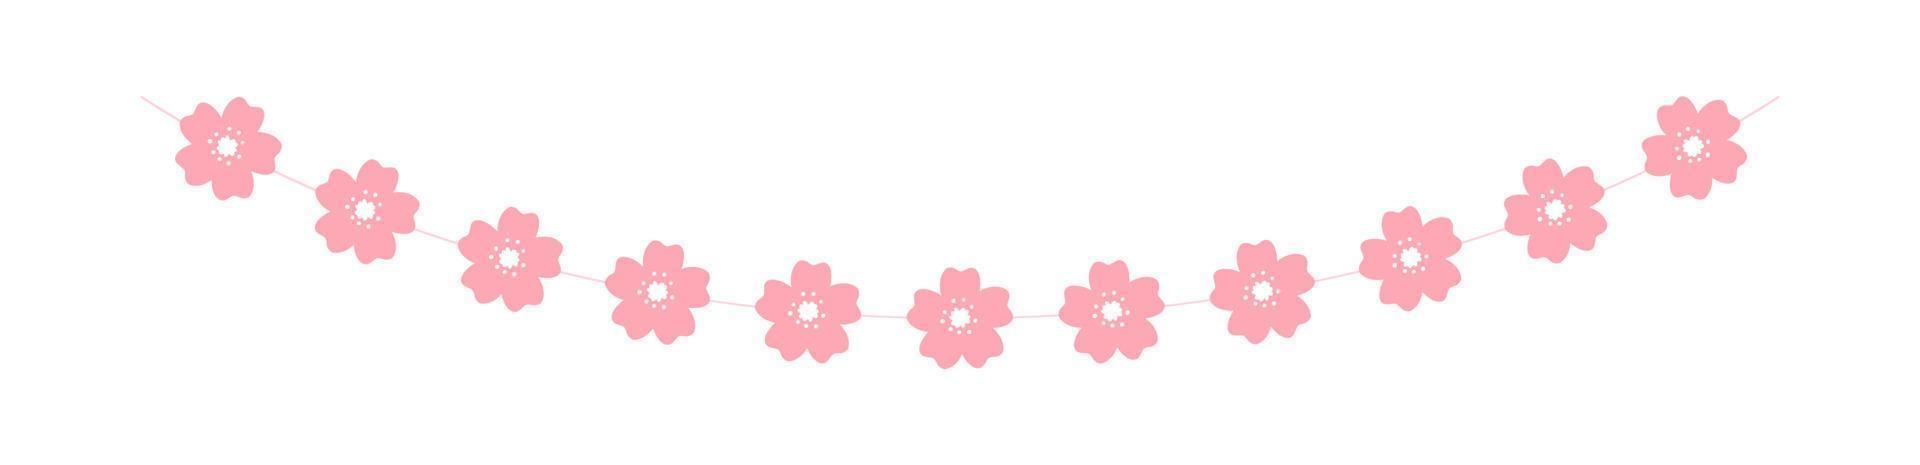 guirlanda de flor de cerejeira, lindos elementos de design de primavera de bandeiras florais vetor